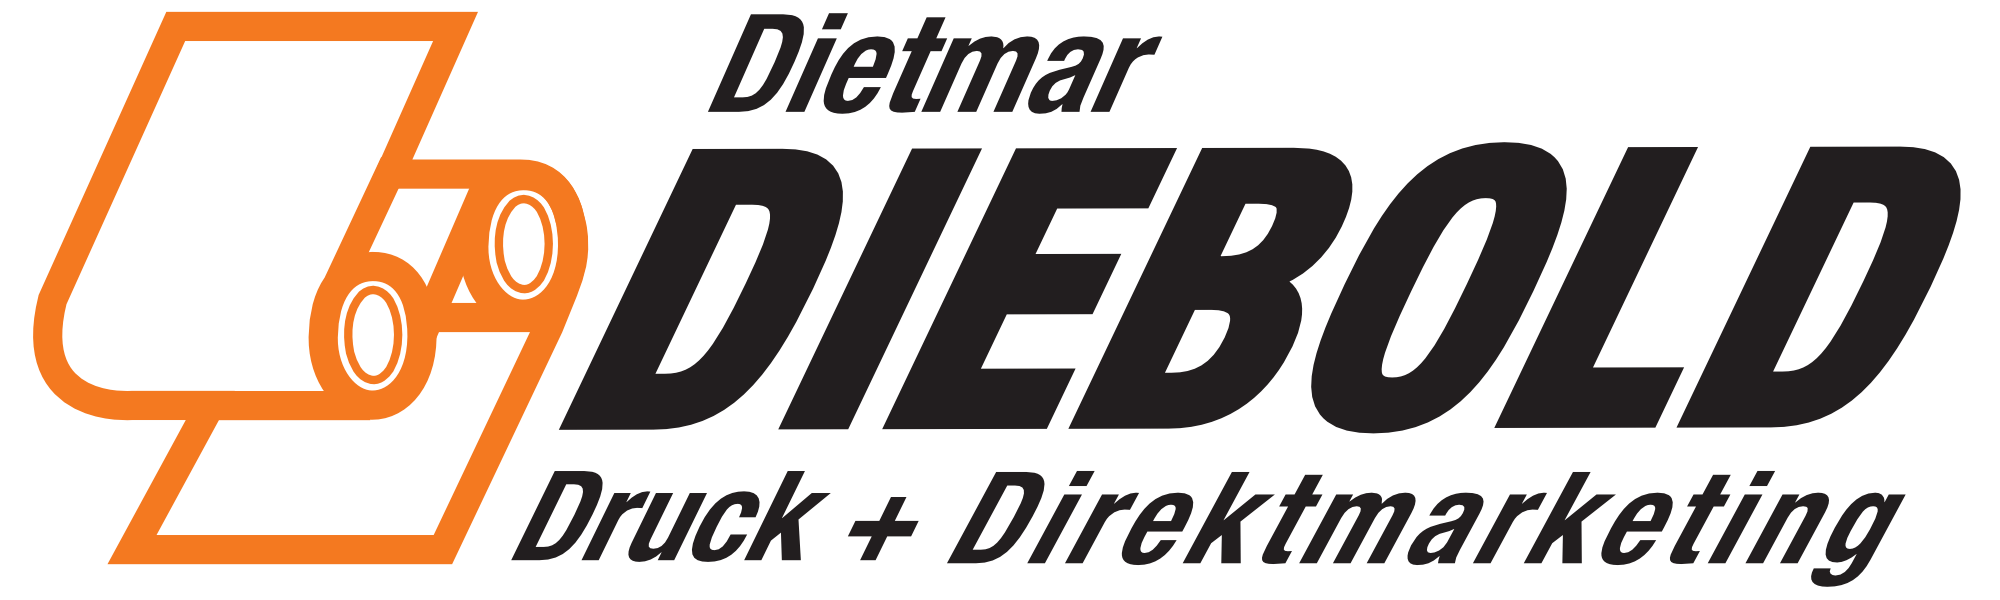 Dietmar Diebold Druck + Direktmarketing Logo